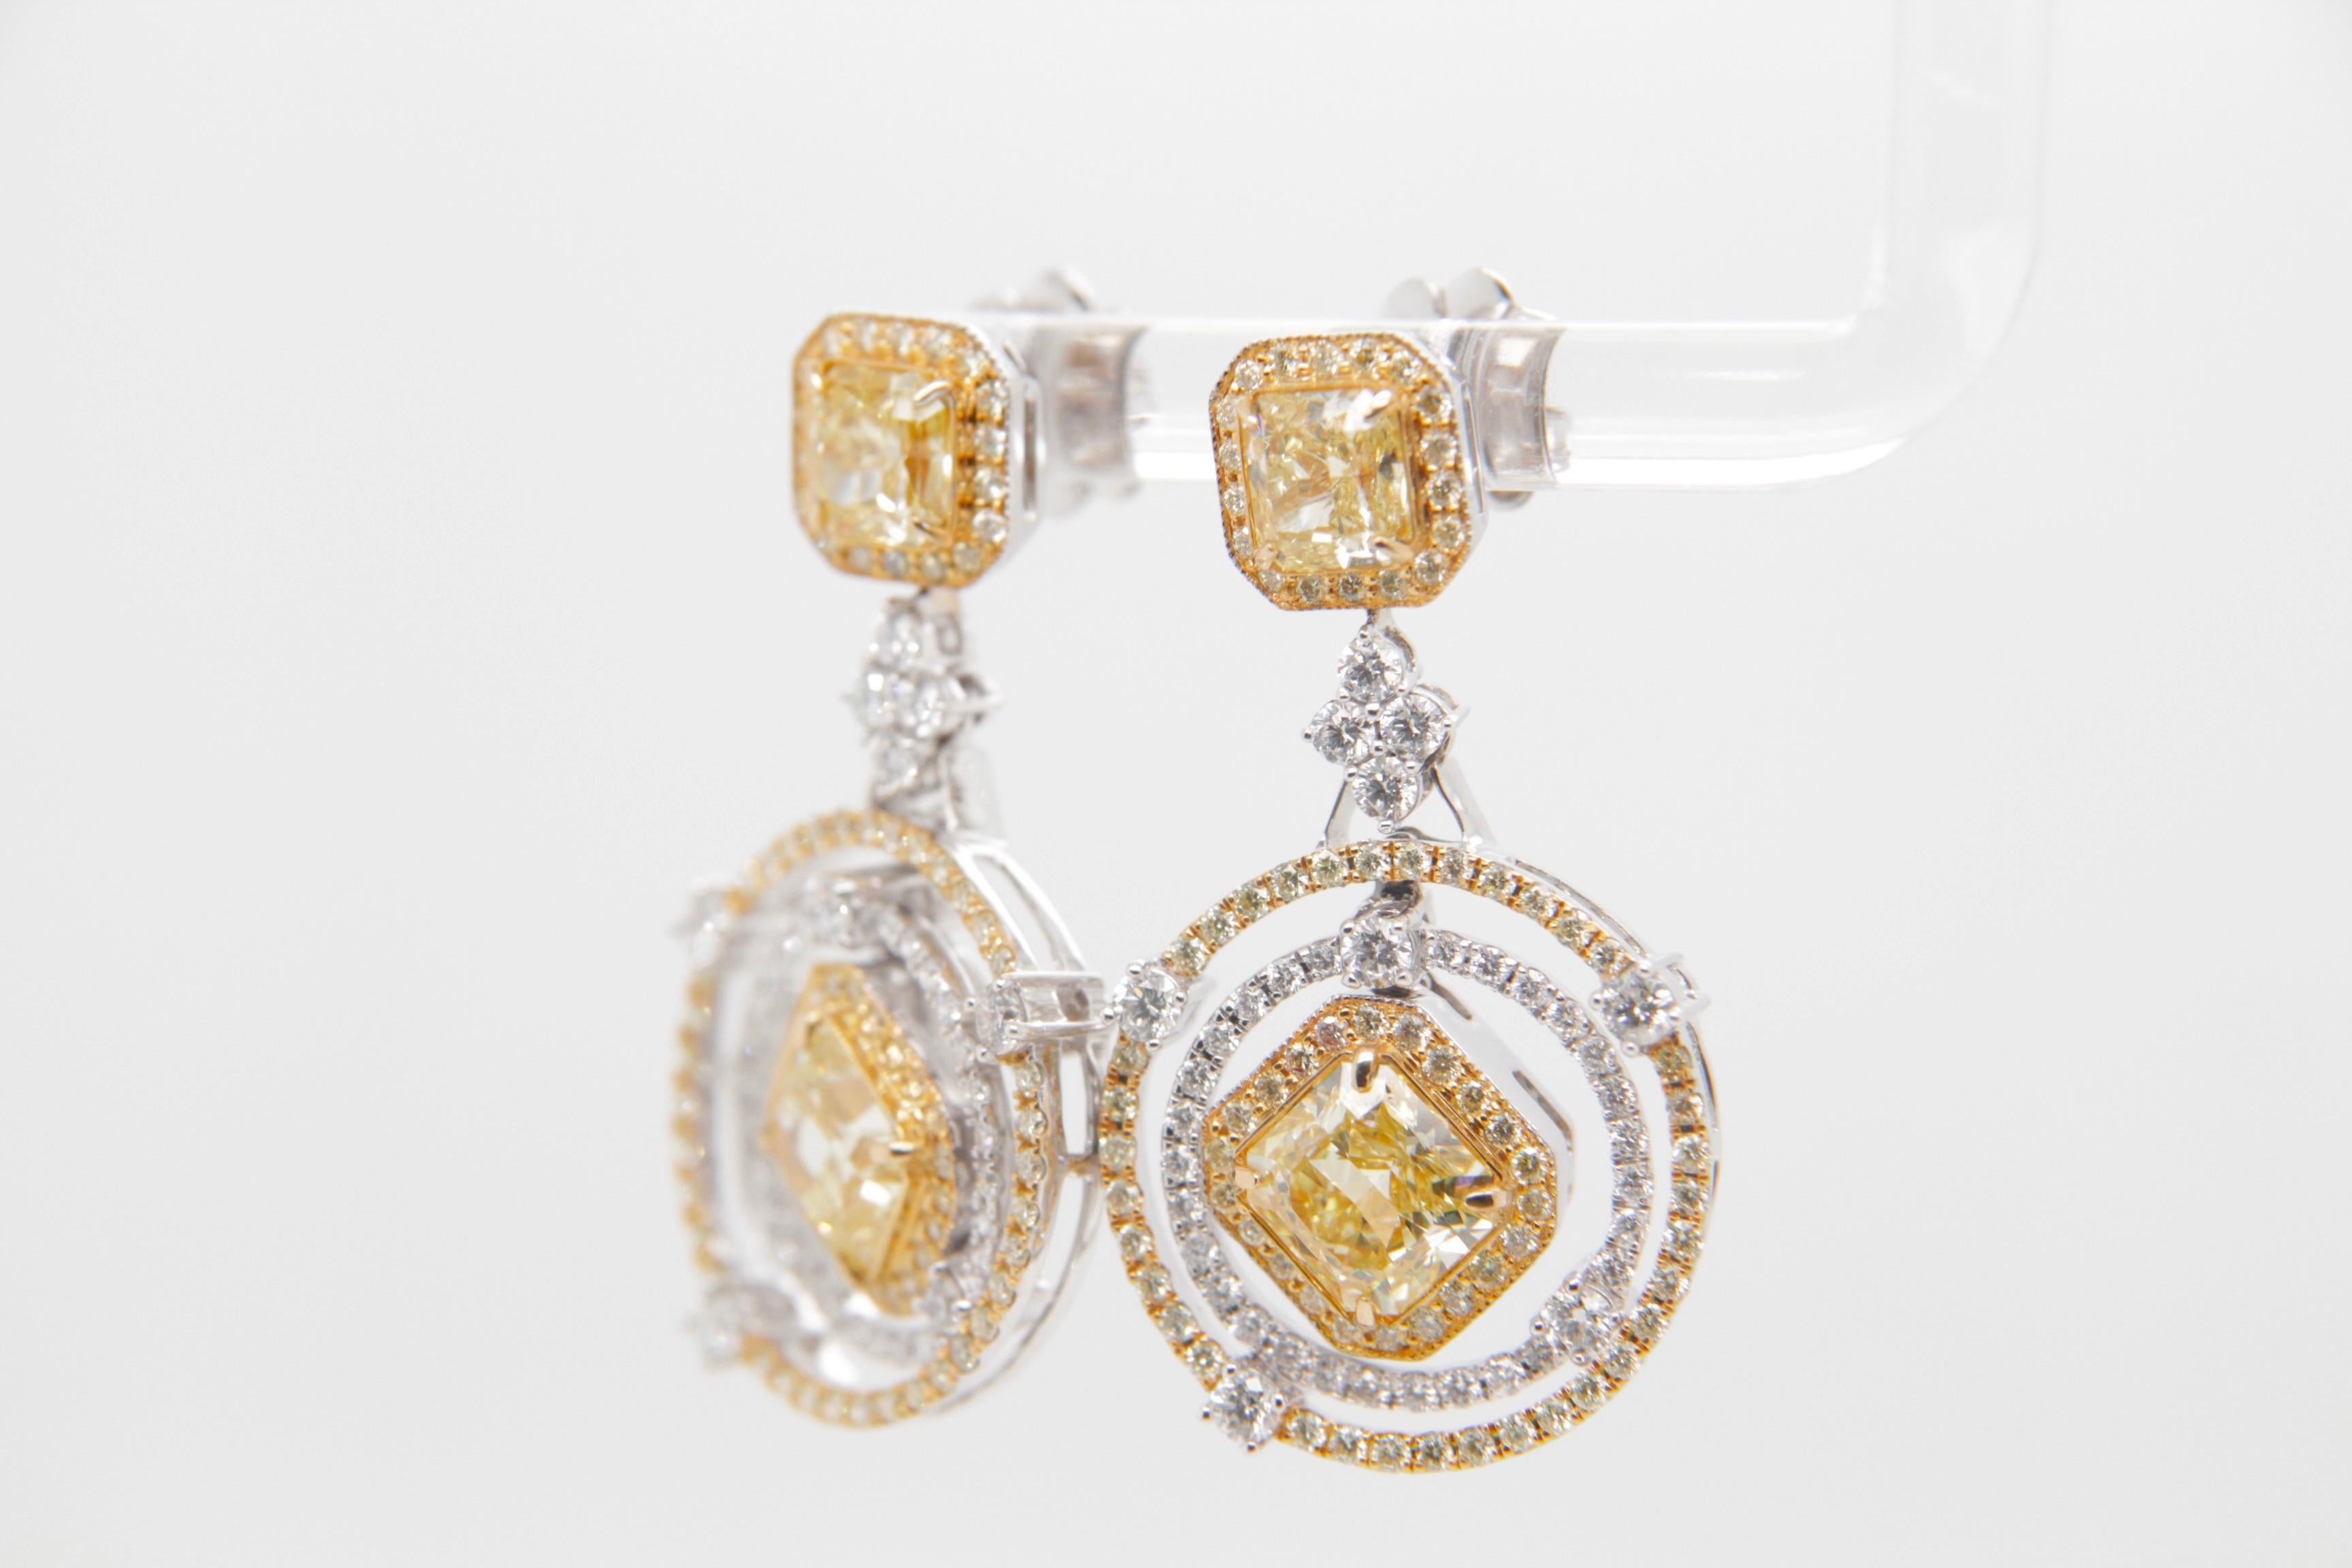 Diese spektakulären Diamantohrringe von REWA Jewelry sind ein wahres Meisterwerk, das die Hingabe der Marke für außergewöhnliche Handwerkskunst und unvergleichliche Schönheit unterstreicht.

Das Herzstück dieser Ohrringe sind vier schillernde